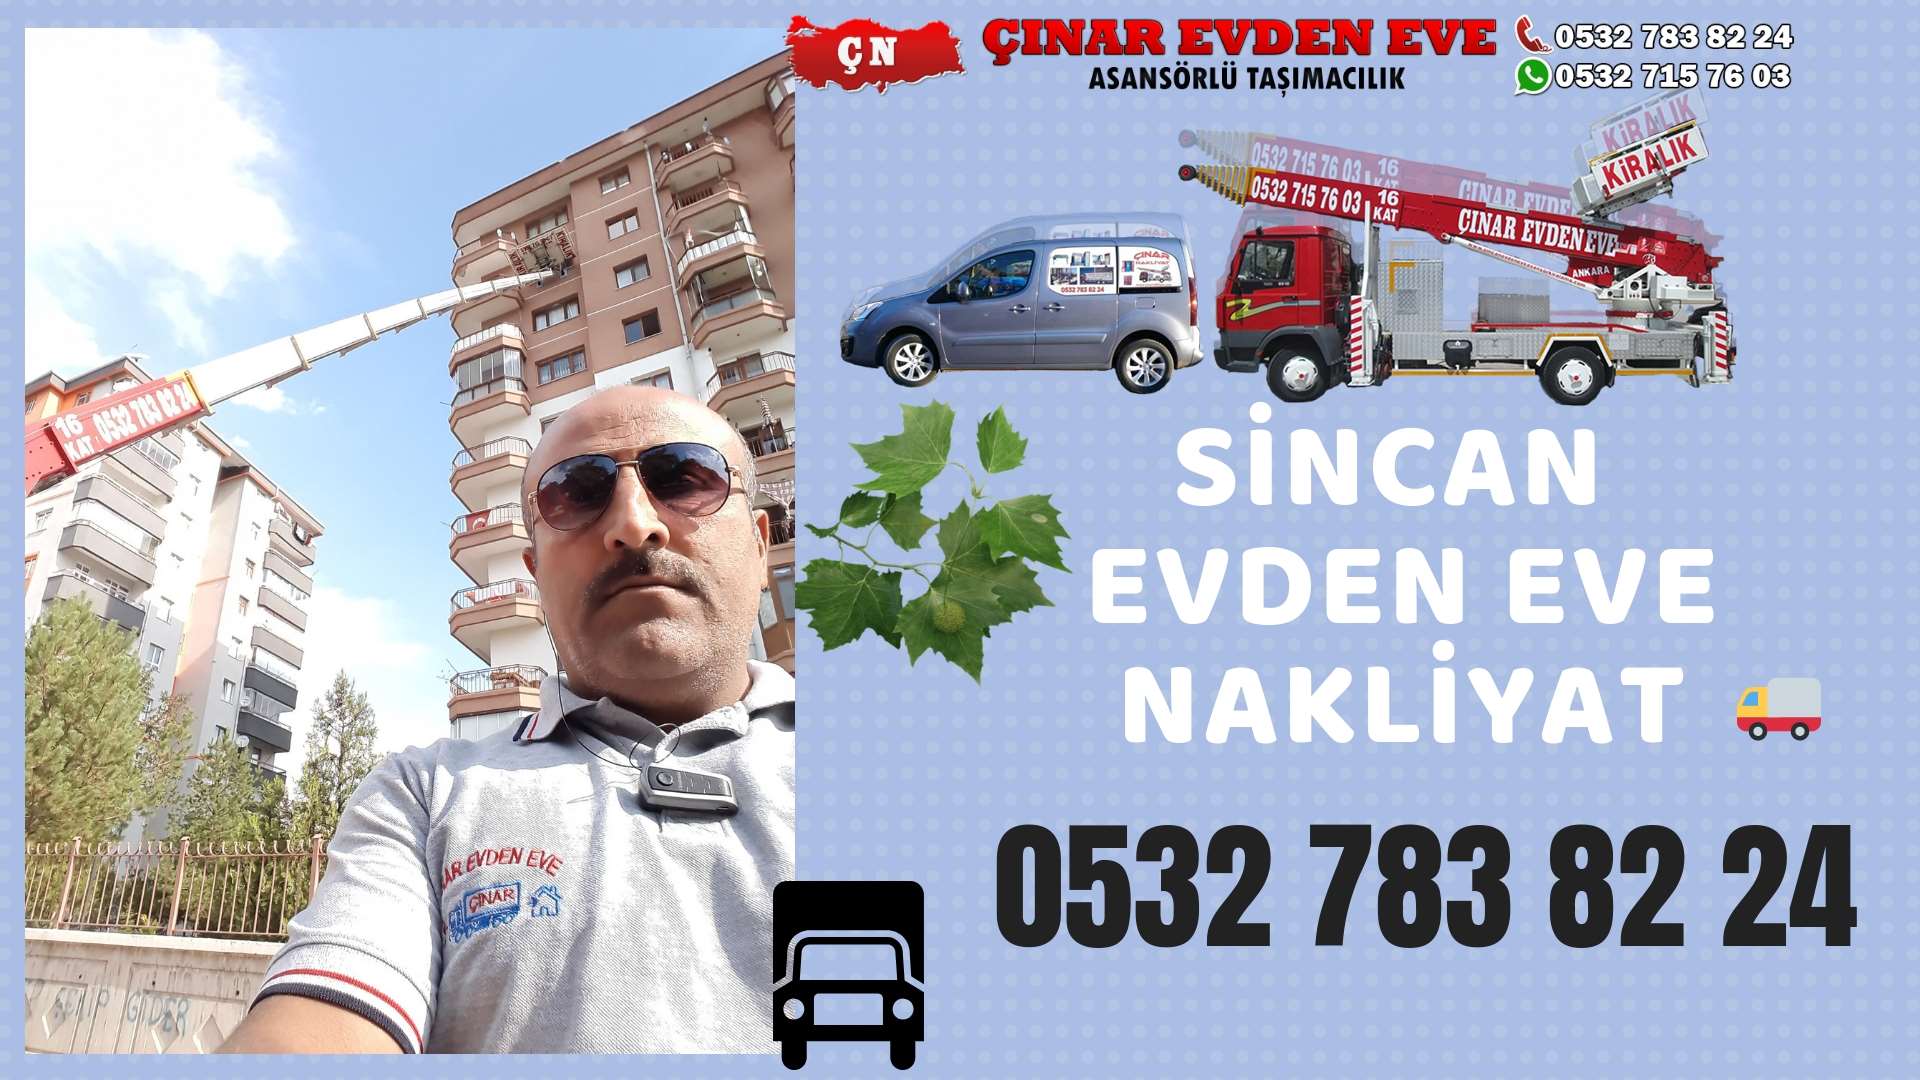 Ankara Gölbaşı / Ankara Evden Eve Nakliyat, Asansörlü Taşımacılık, Ofis / İş Yeri Taşıma 0532 715 76 03